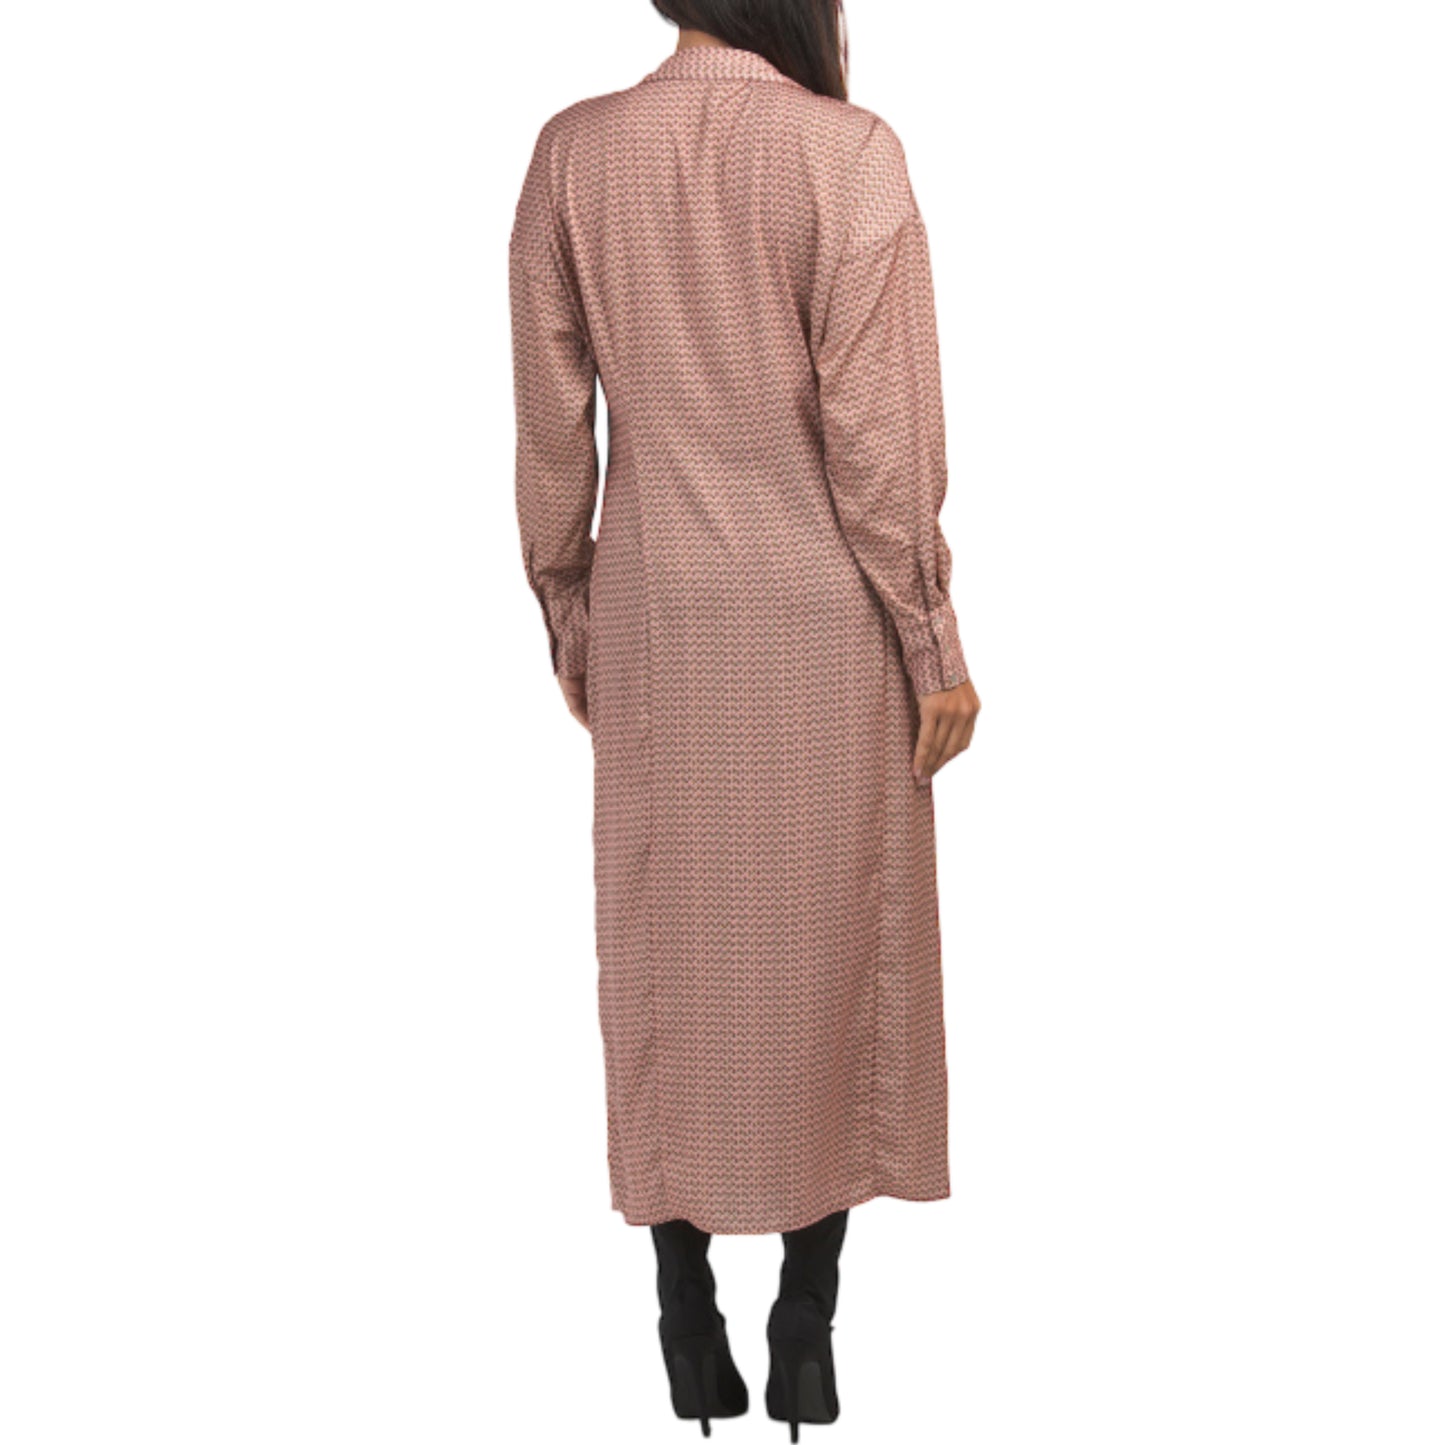 Zara Floral Print Silky Texture Long Sleeve Button Front Shirt Maxi Dress